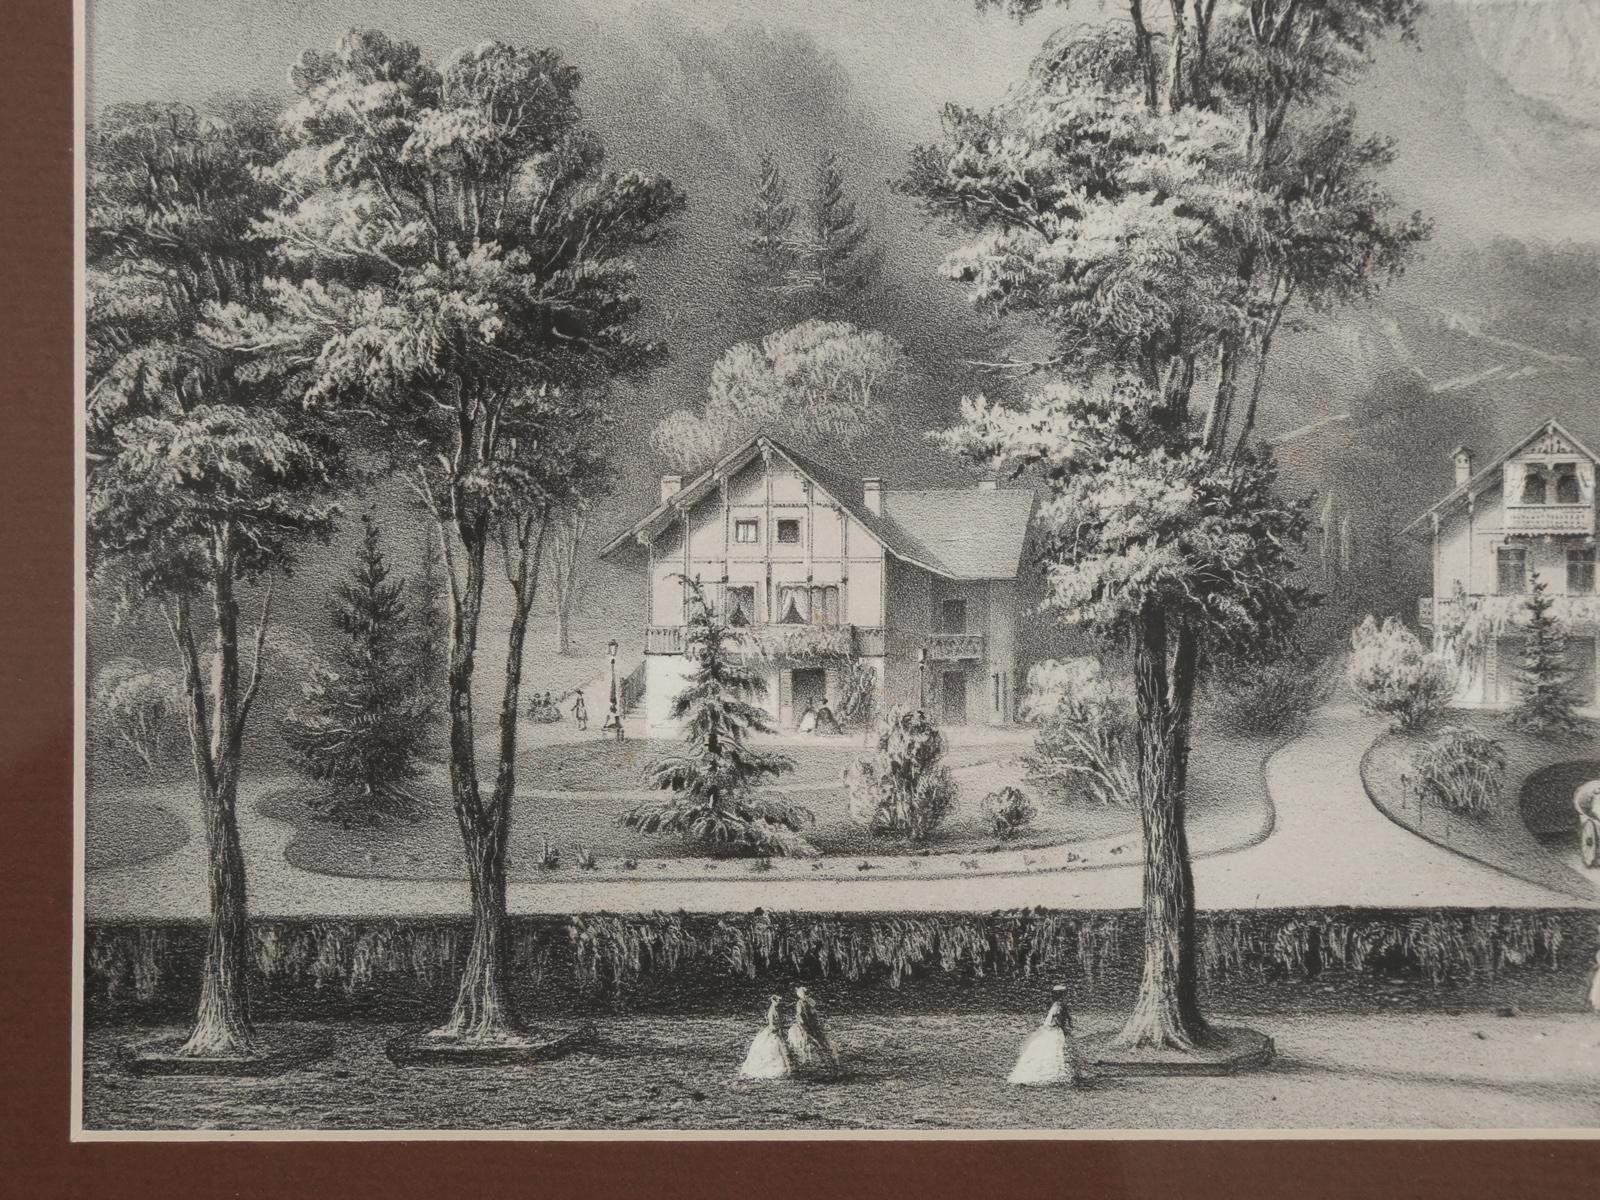 Title Vues Nouvelles or New Views, Black Forest Village Scene, circa 1800s 2